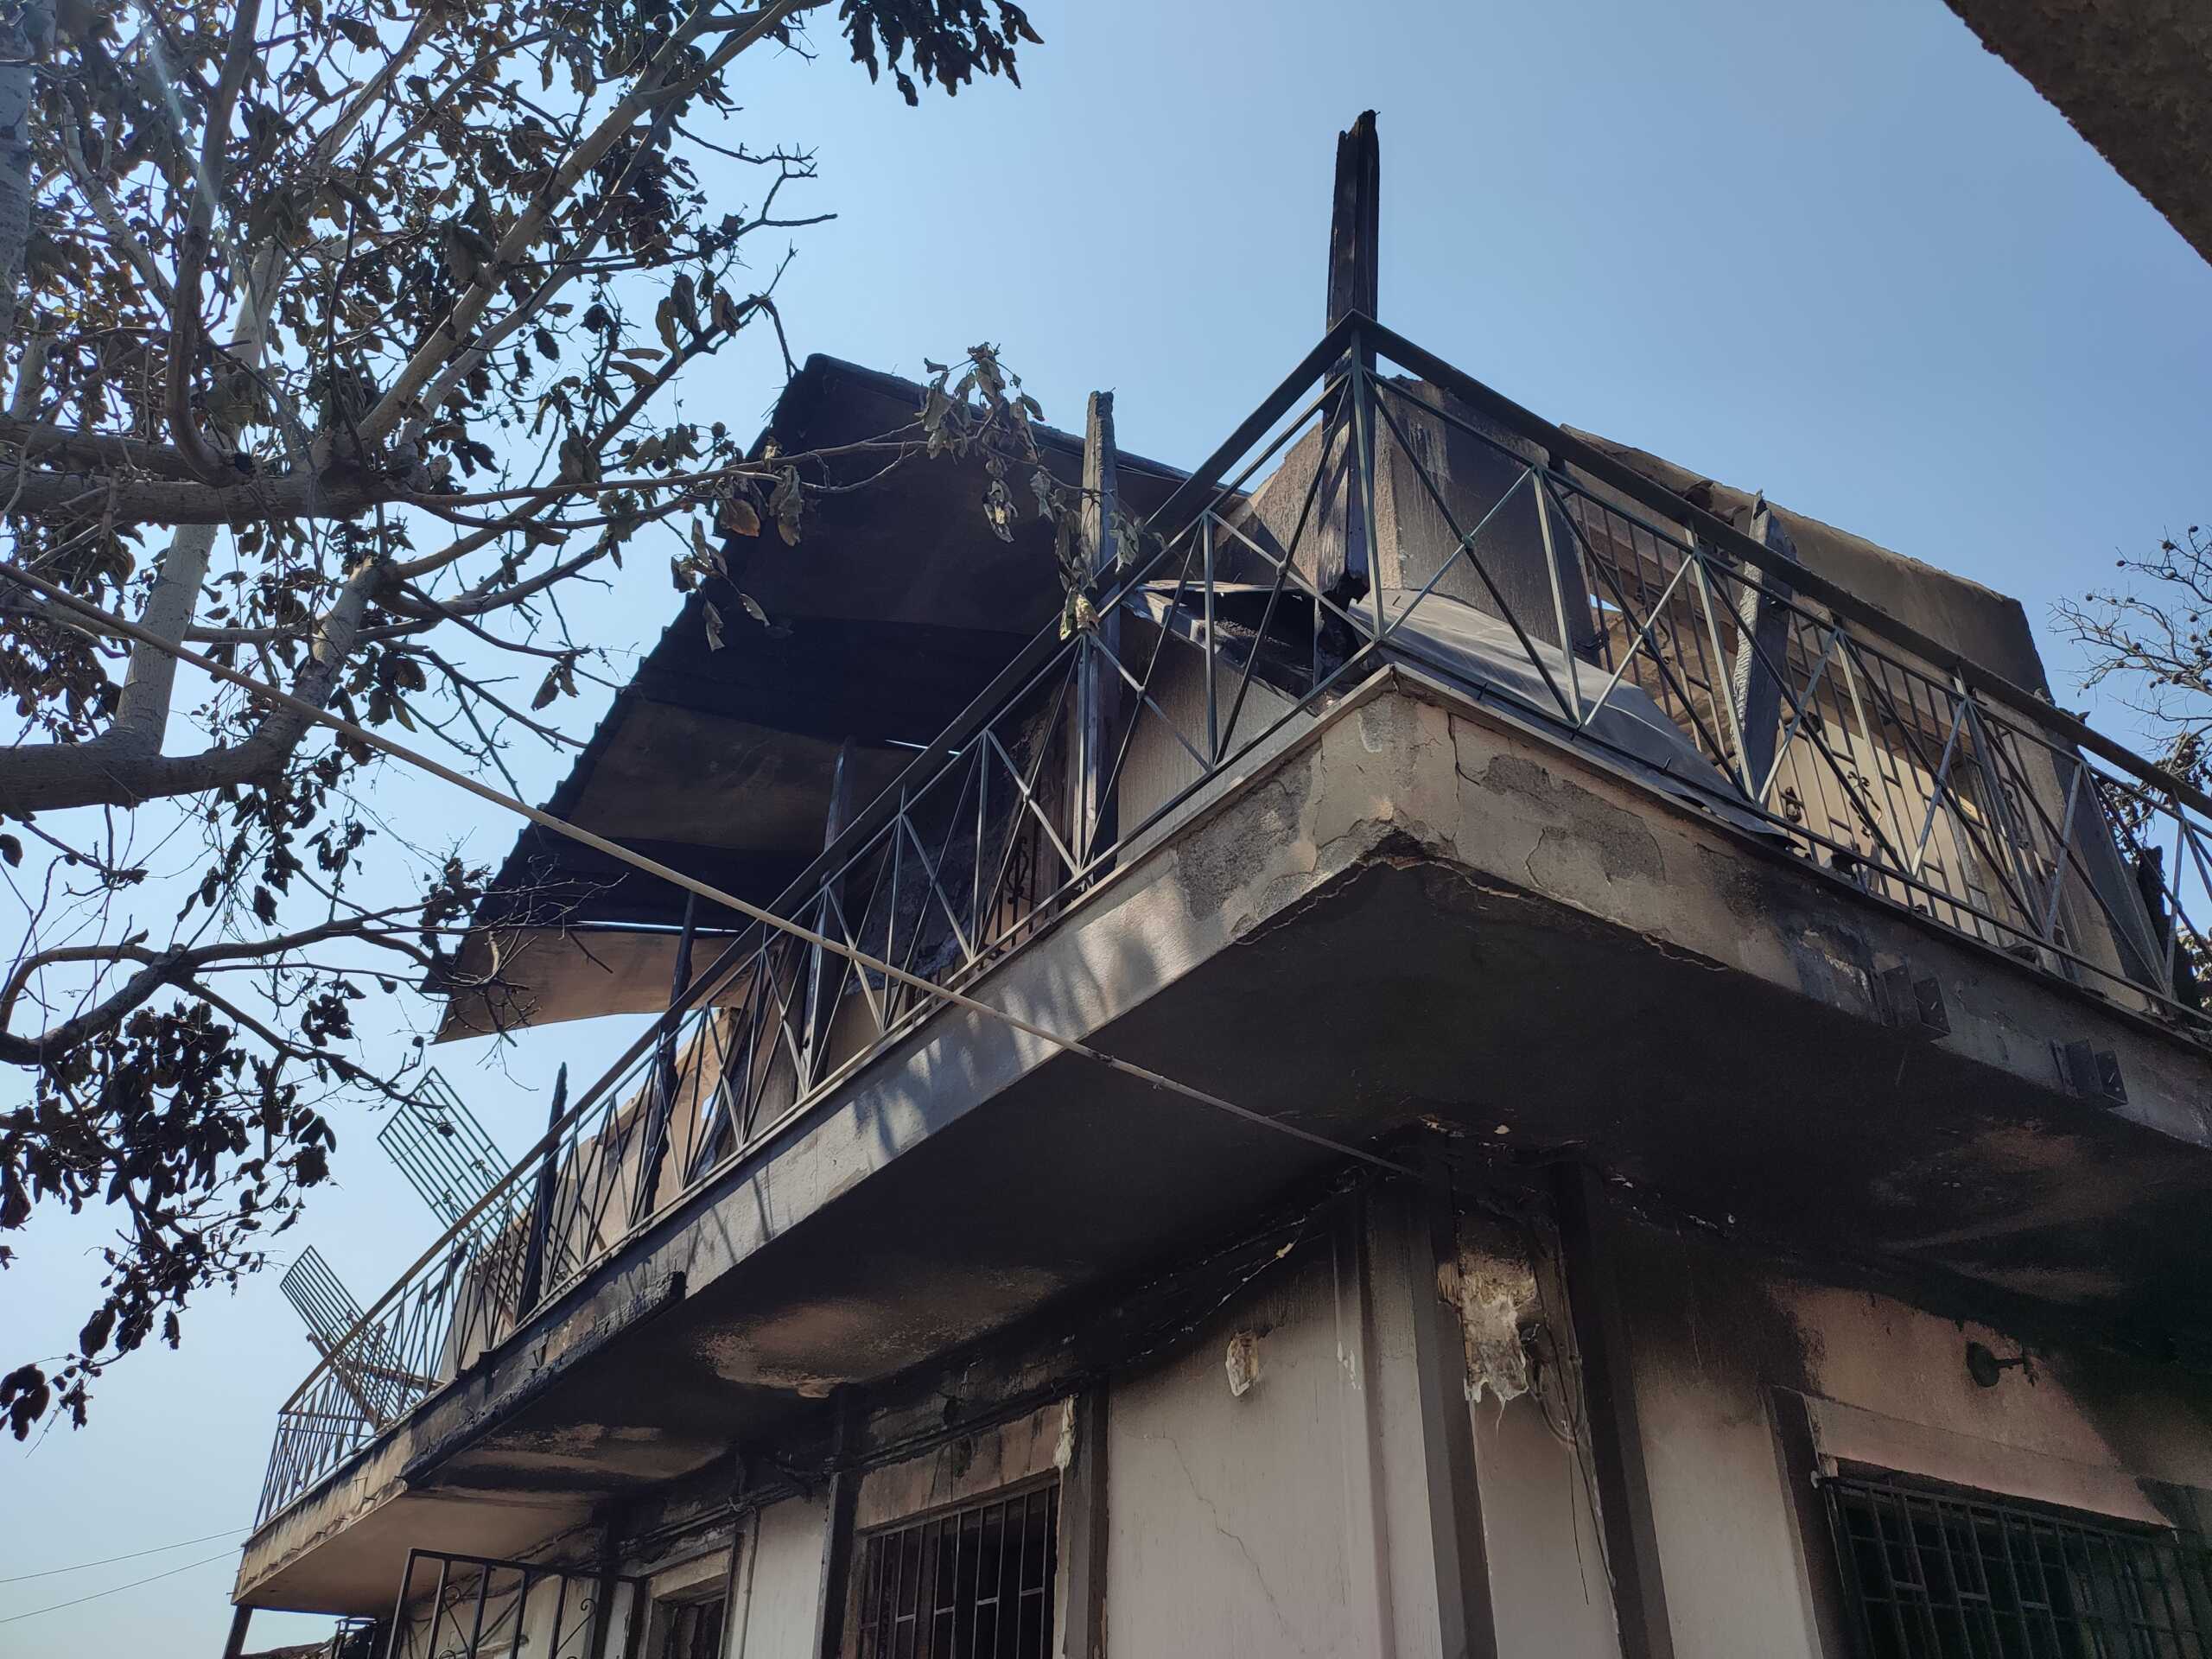 Δήμος Αχαρνών: Ανοιχτά και το Σαββατοκύριακο για την καταγραφή των ζημιών από τη φωτιά